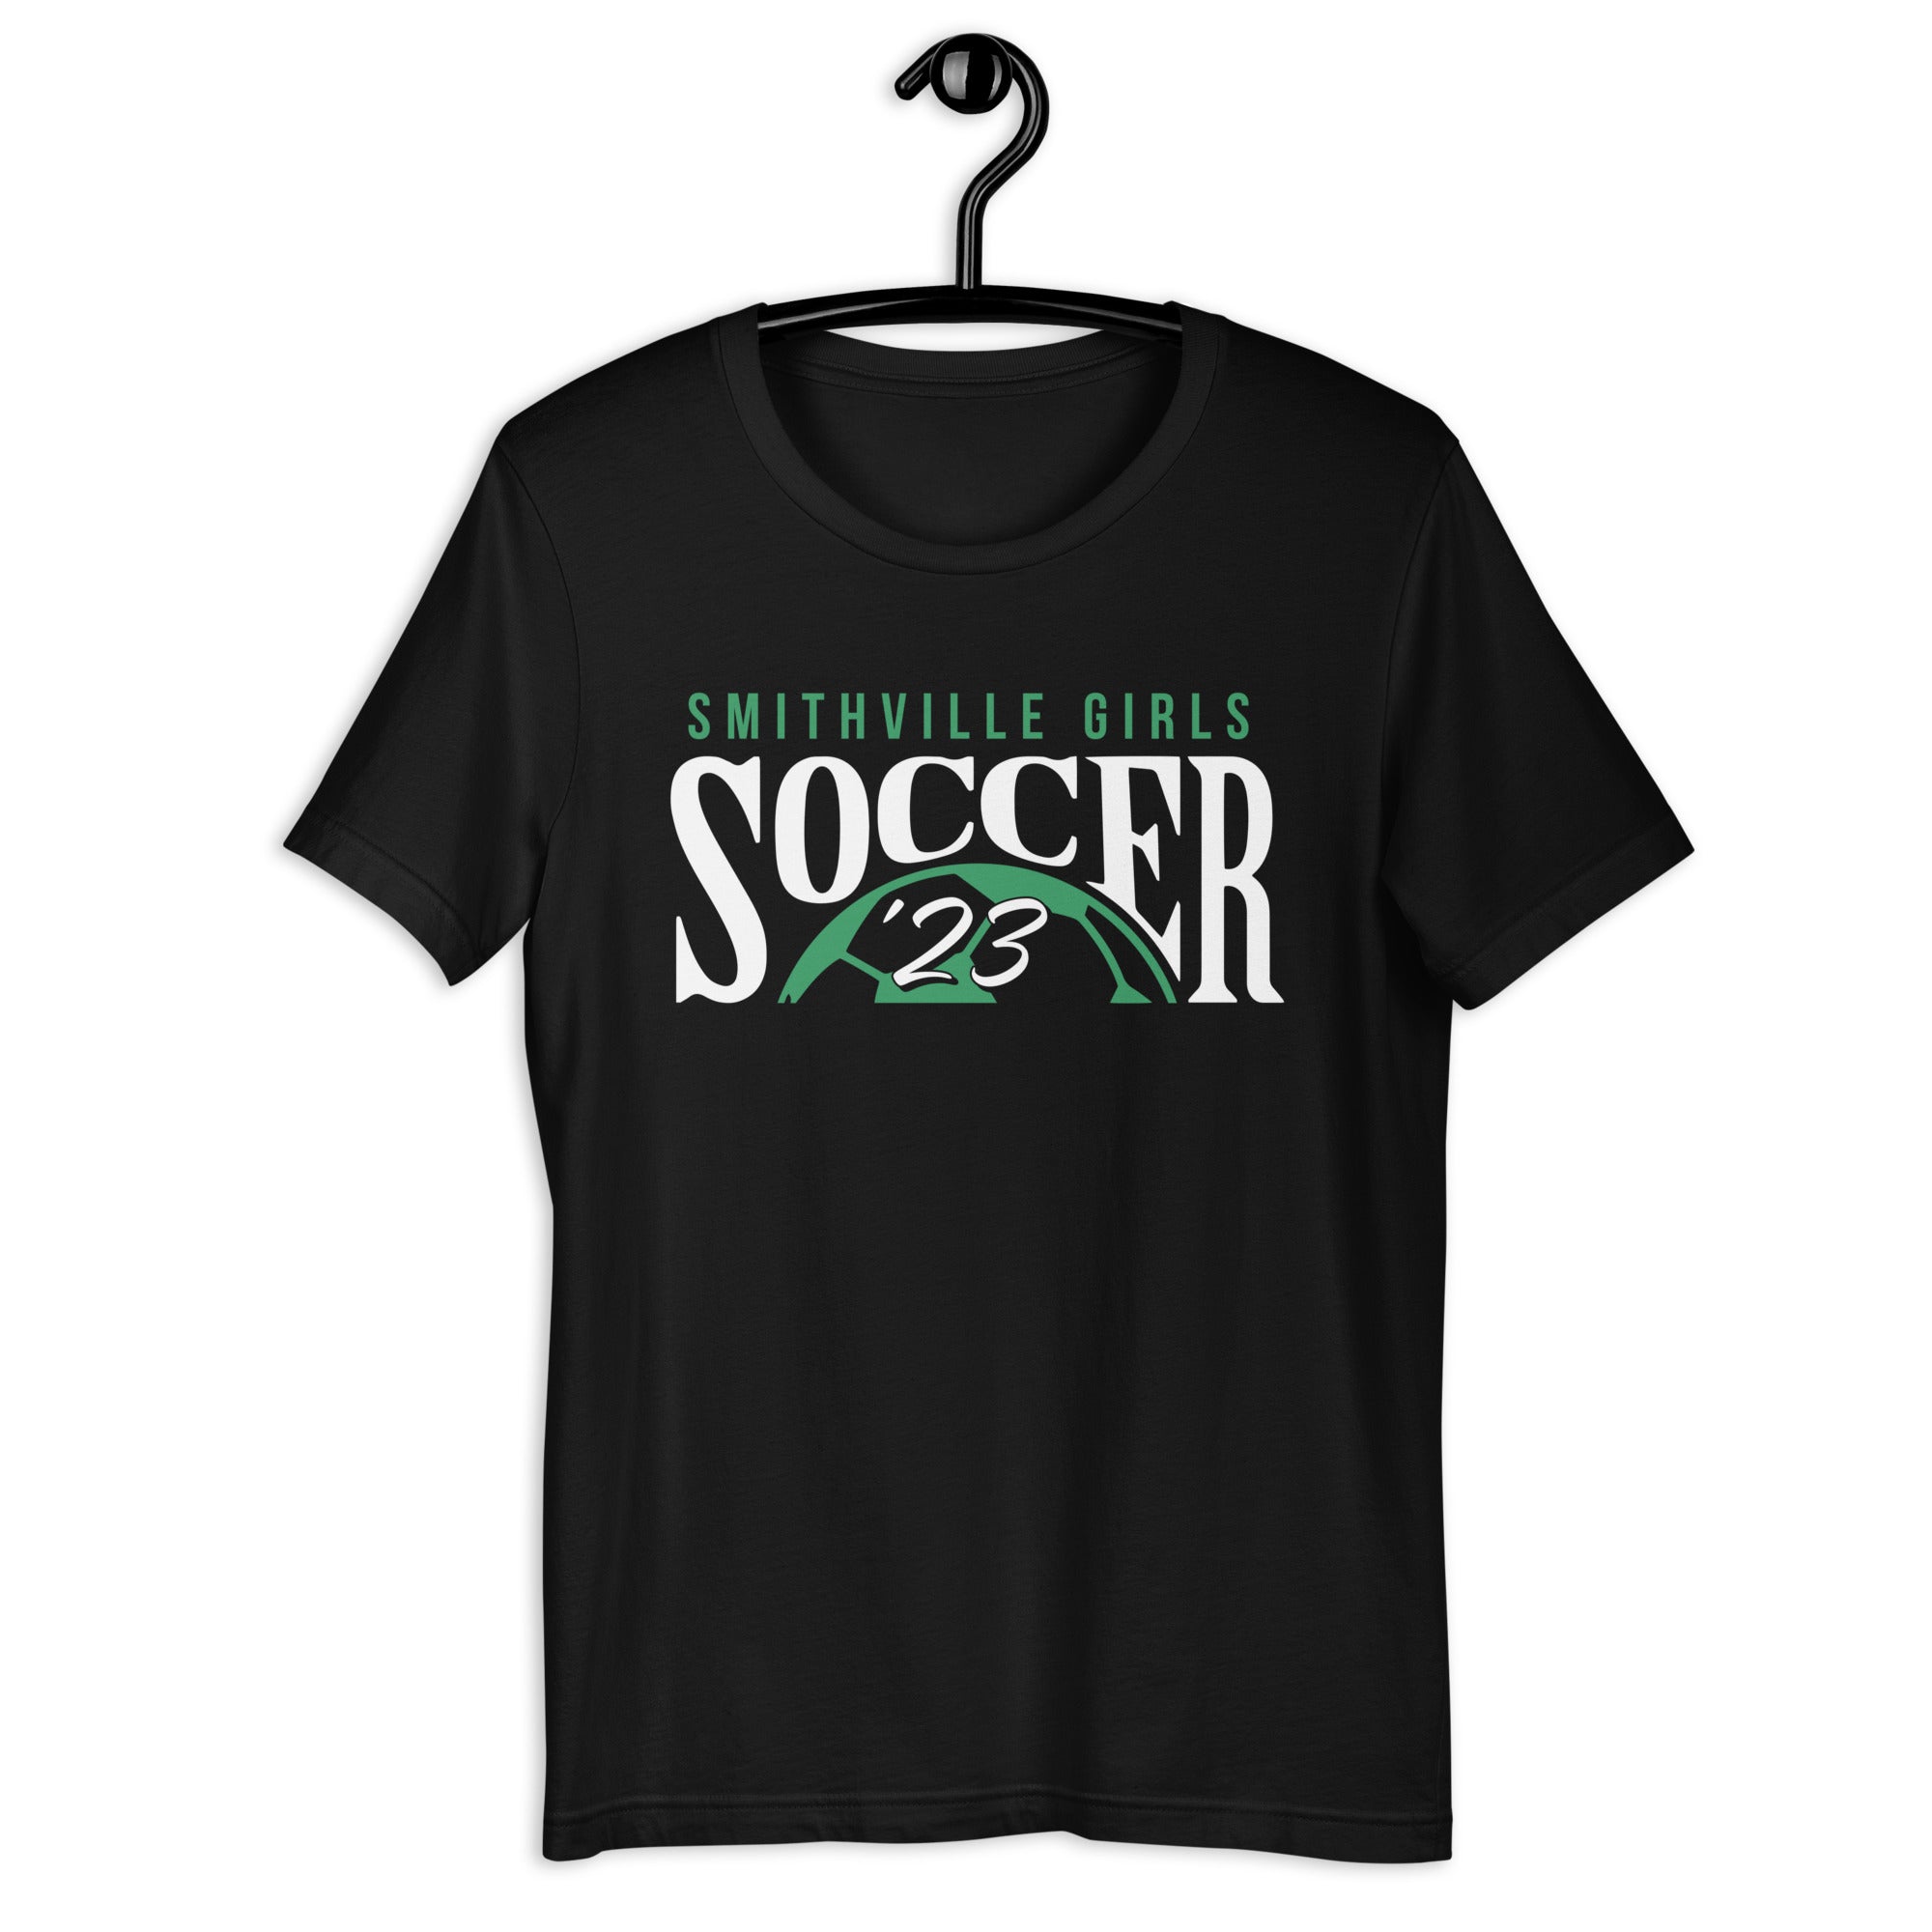 Smithville Girls Soccer '23 Unisex t-shirt